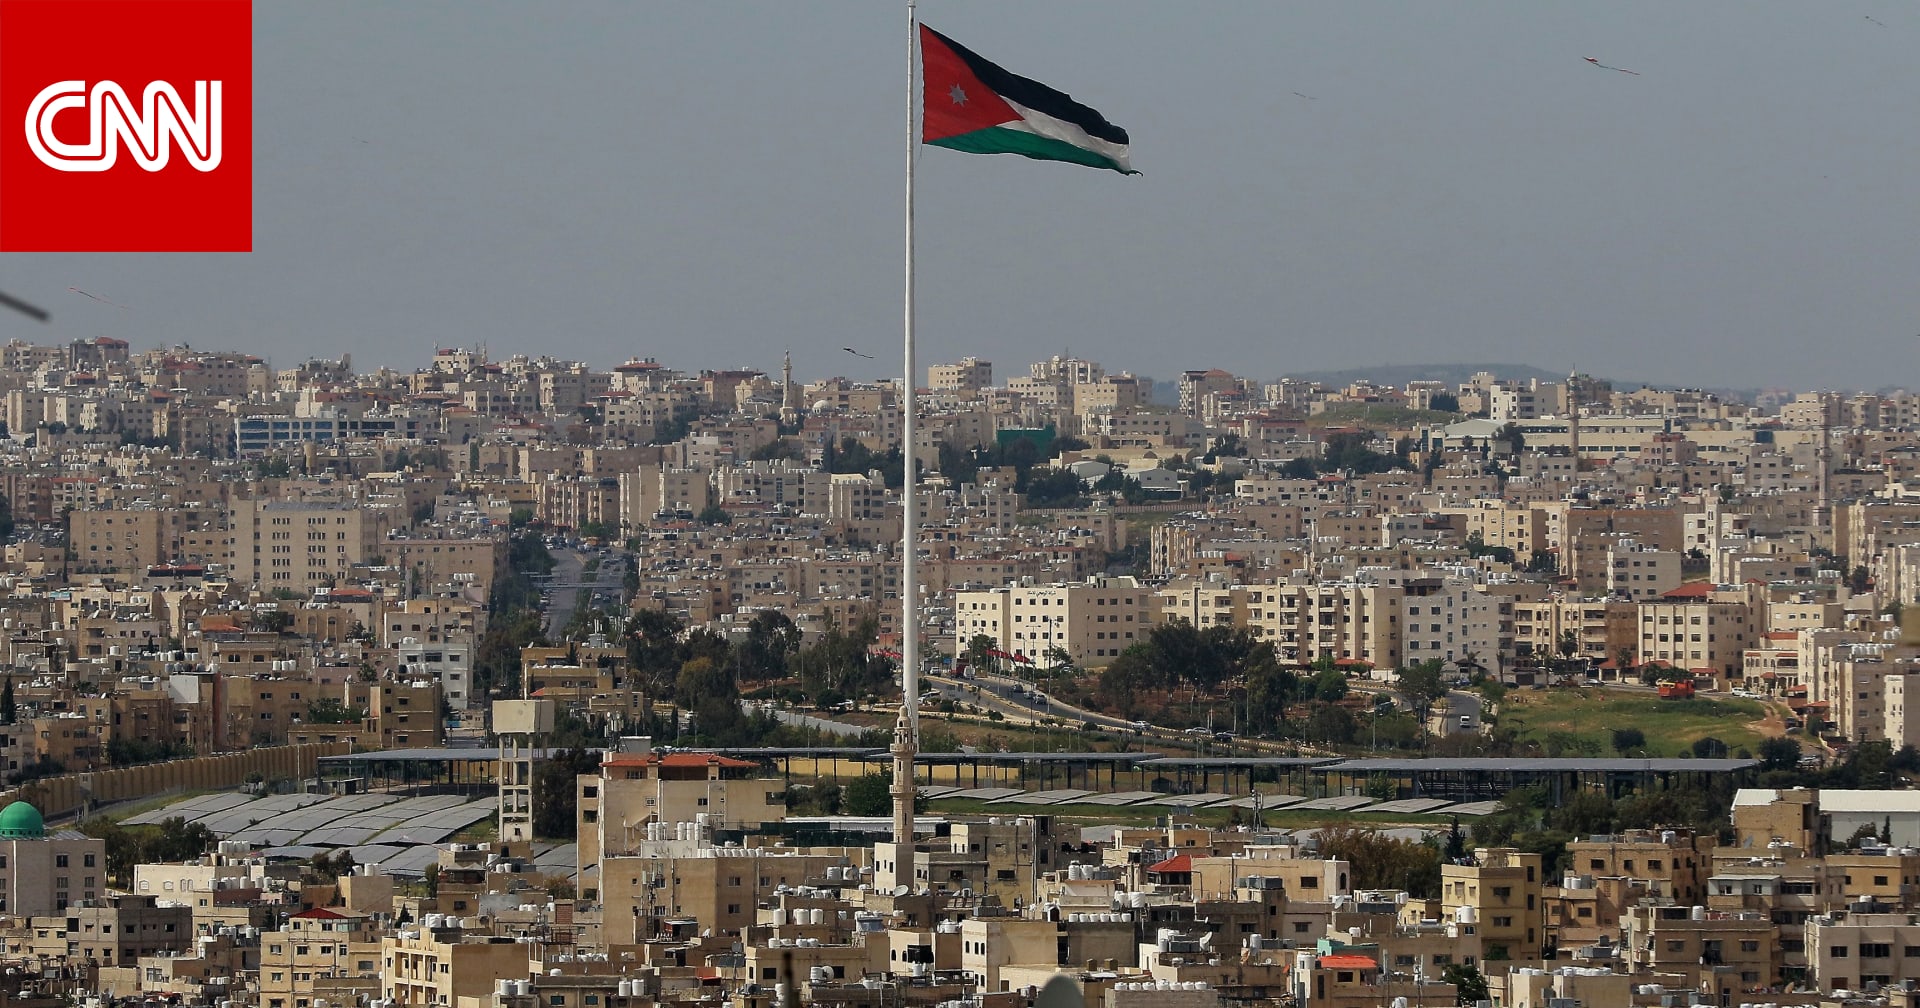 فحص كورونا  يؤجل لقاء معتقلين أردنيين مفرج عنهم في سوريا بعائلاتهم - CNN Arabic